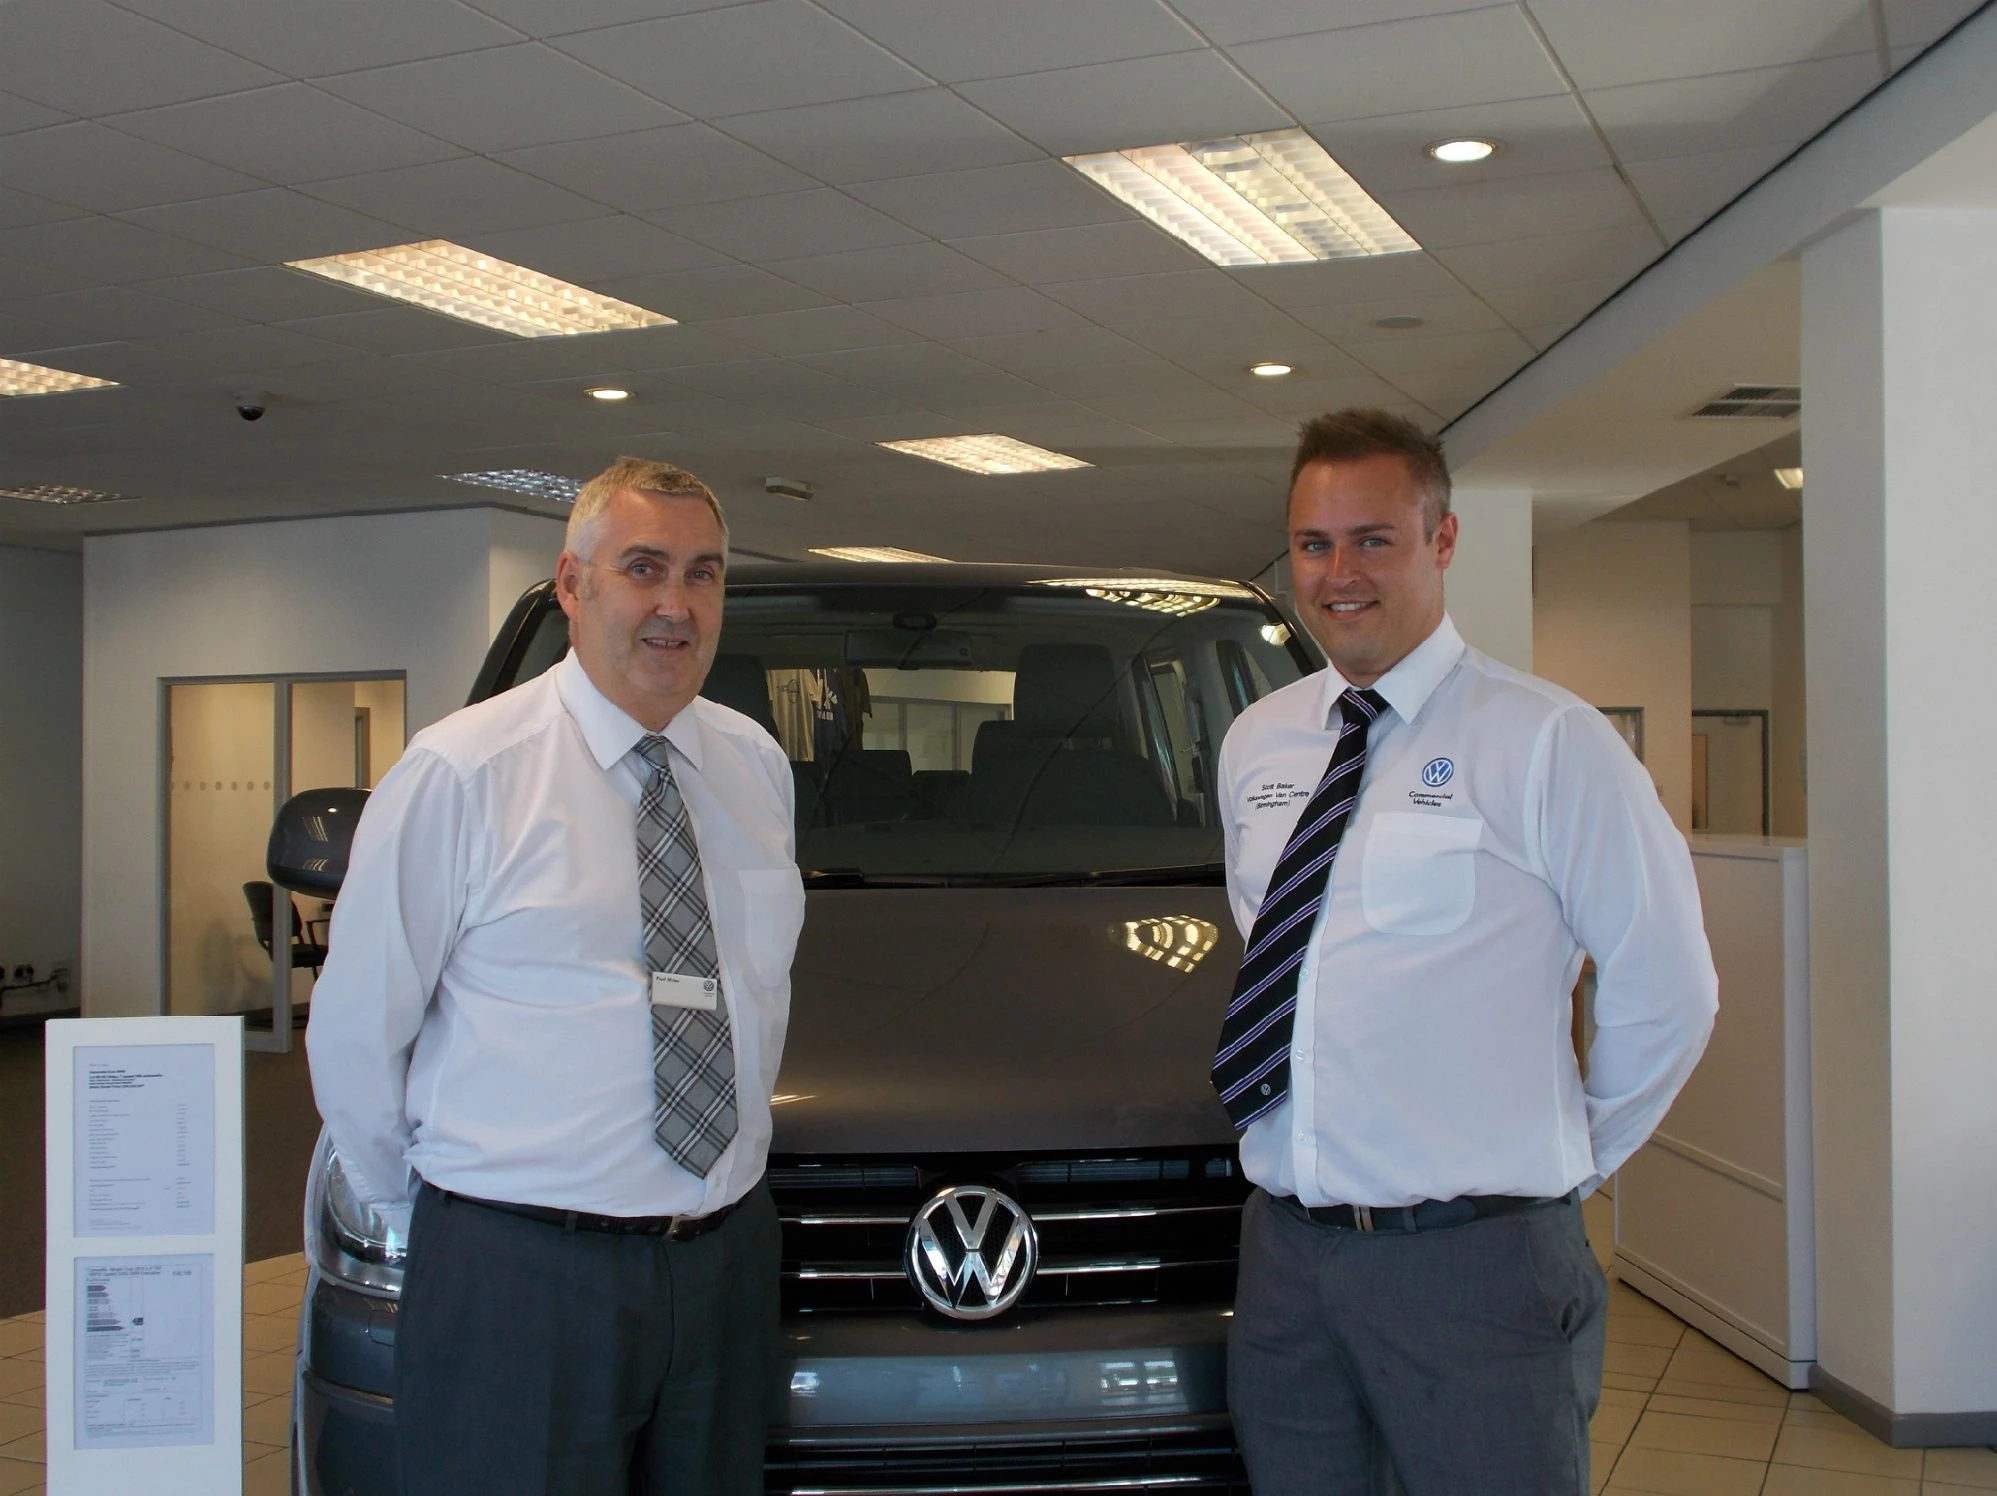 Volkswagen Van Centre Birmingham’s new business development managers, Paul Myles and Scott Baker. 